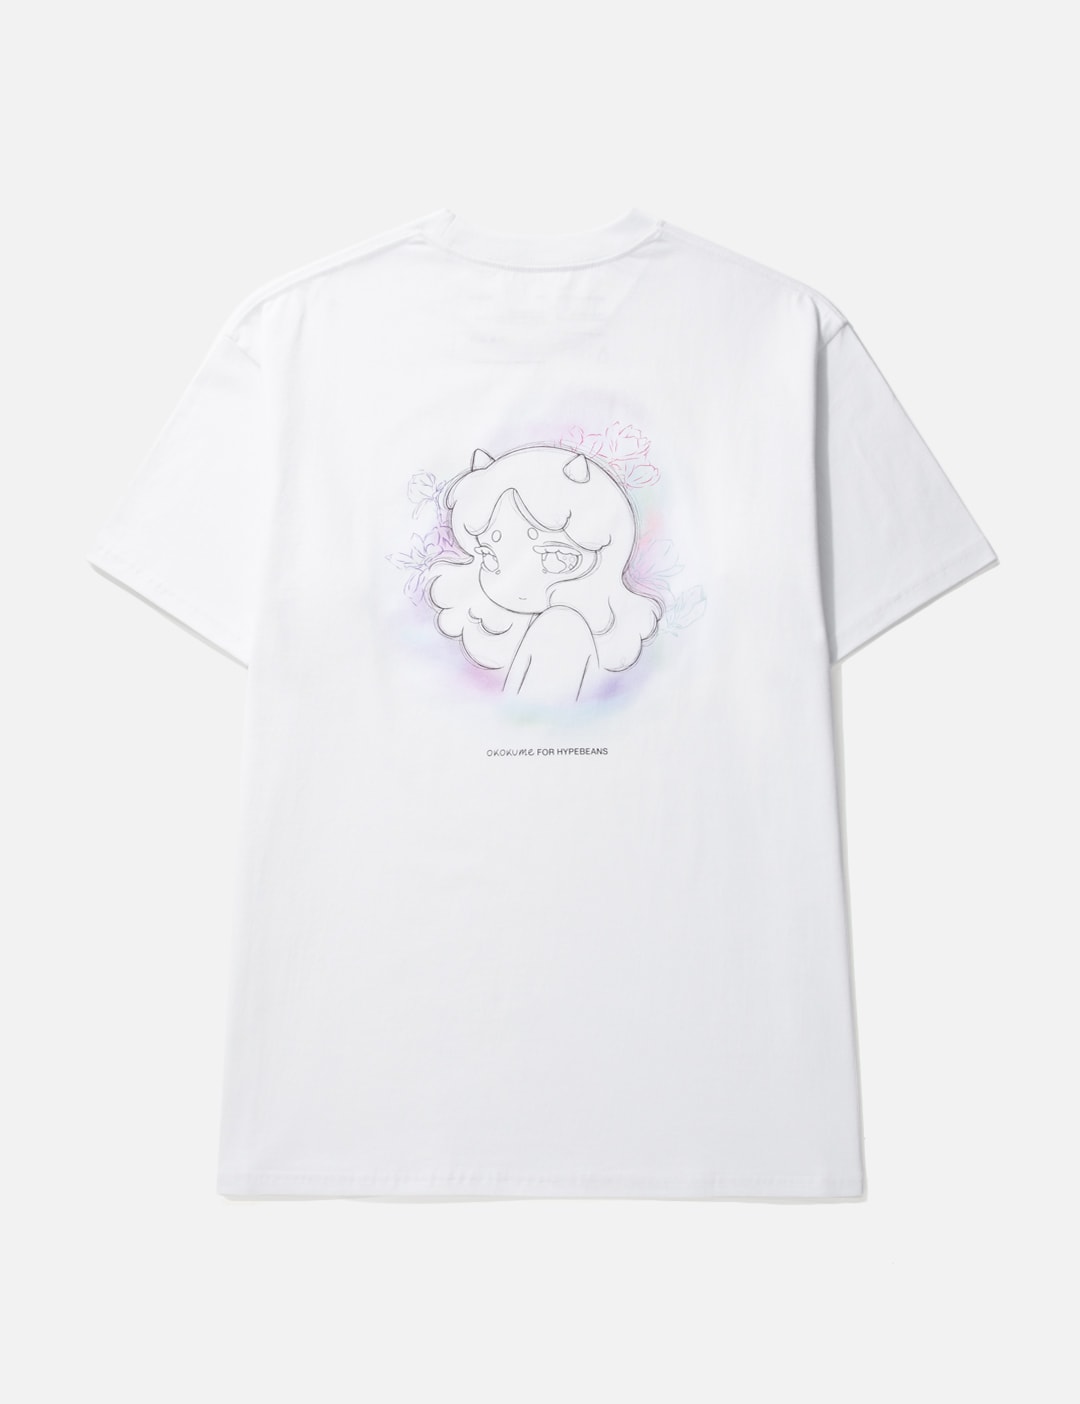 Okokume for HYPEBEANS T-shirt Placeholder Image